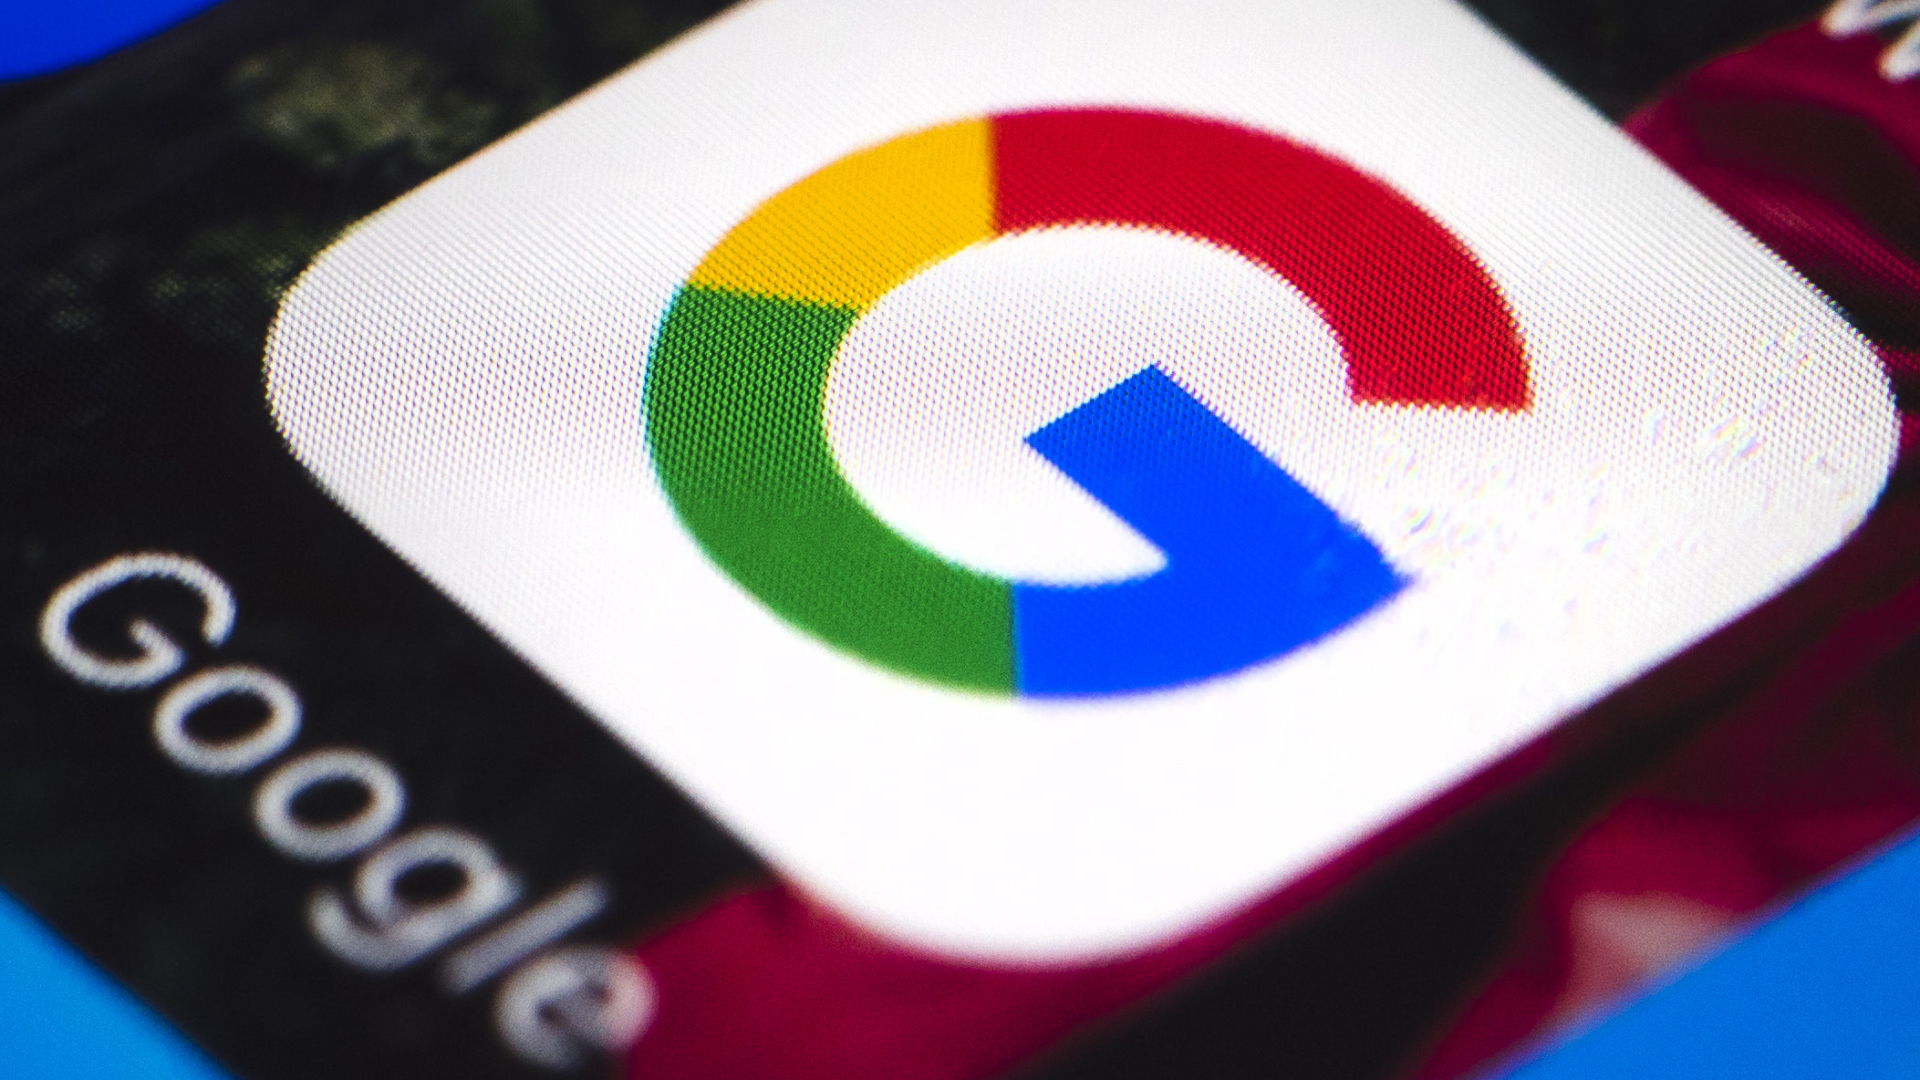 Das Google-Logo auf dem Display eines Mobiltelefons. | Bildquelle: dpa